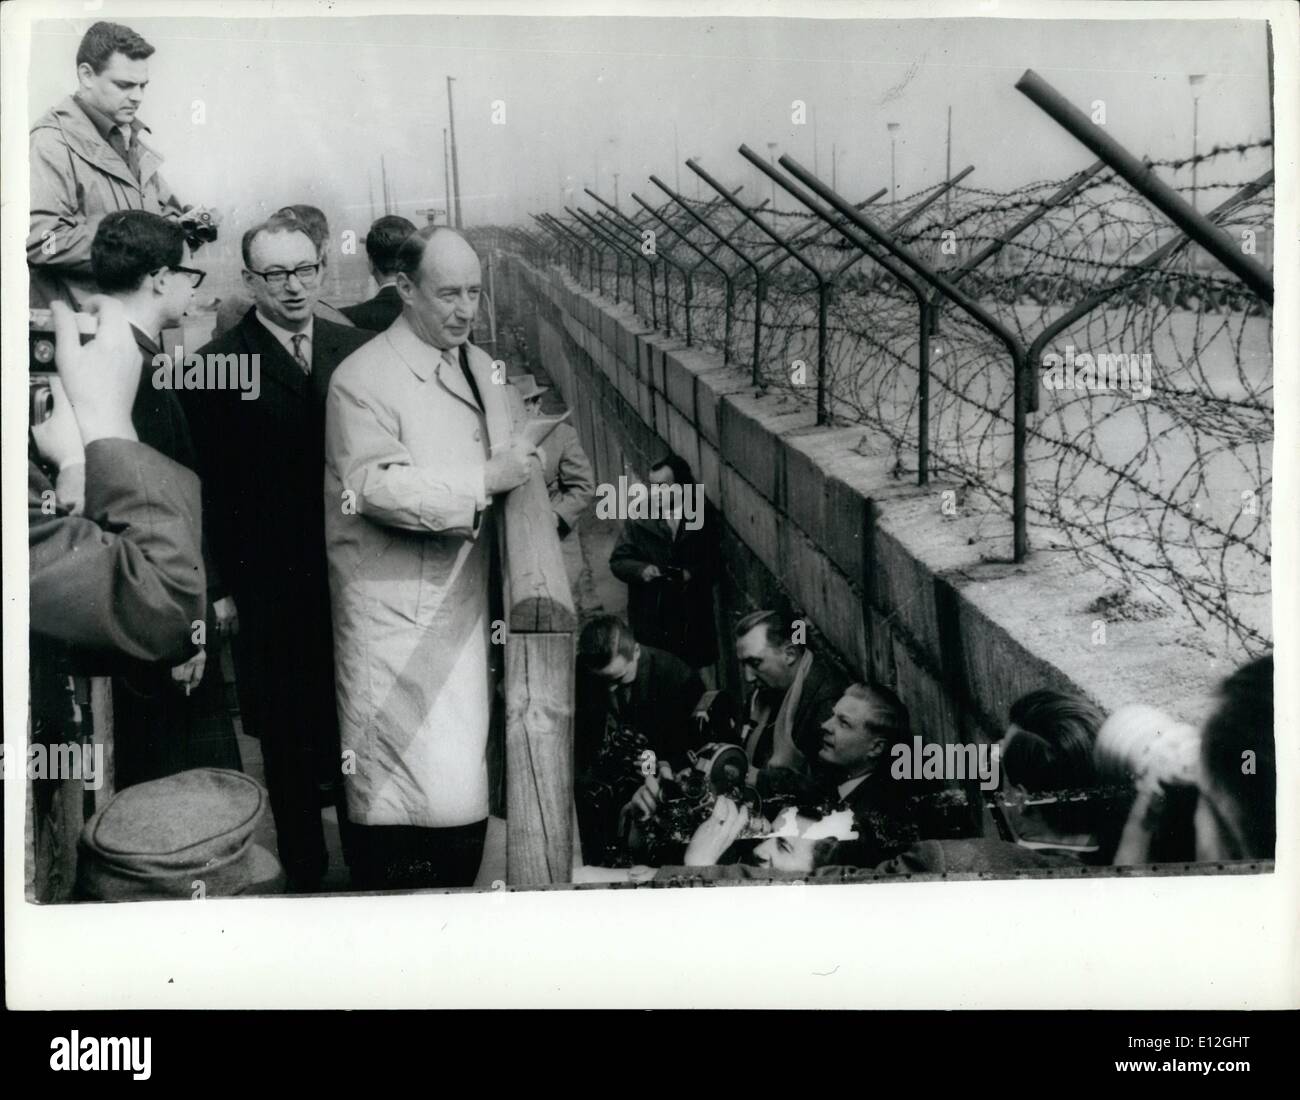 26. Dezember 2011 - Adlai Stevenson In Berlin: Herr Adlai Stevenson, ist der Chief US-Delegierten bei den Vereinten Nationen bei einem Besuch in West-Berlin. Foto zeigt Herr Adlai Stevenson sieht heute über die Berliner Mauer am Potsdamer Platz. Stockfoto